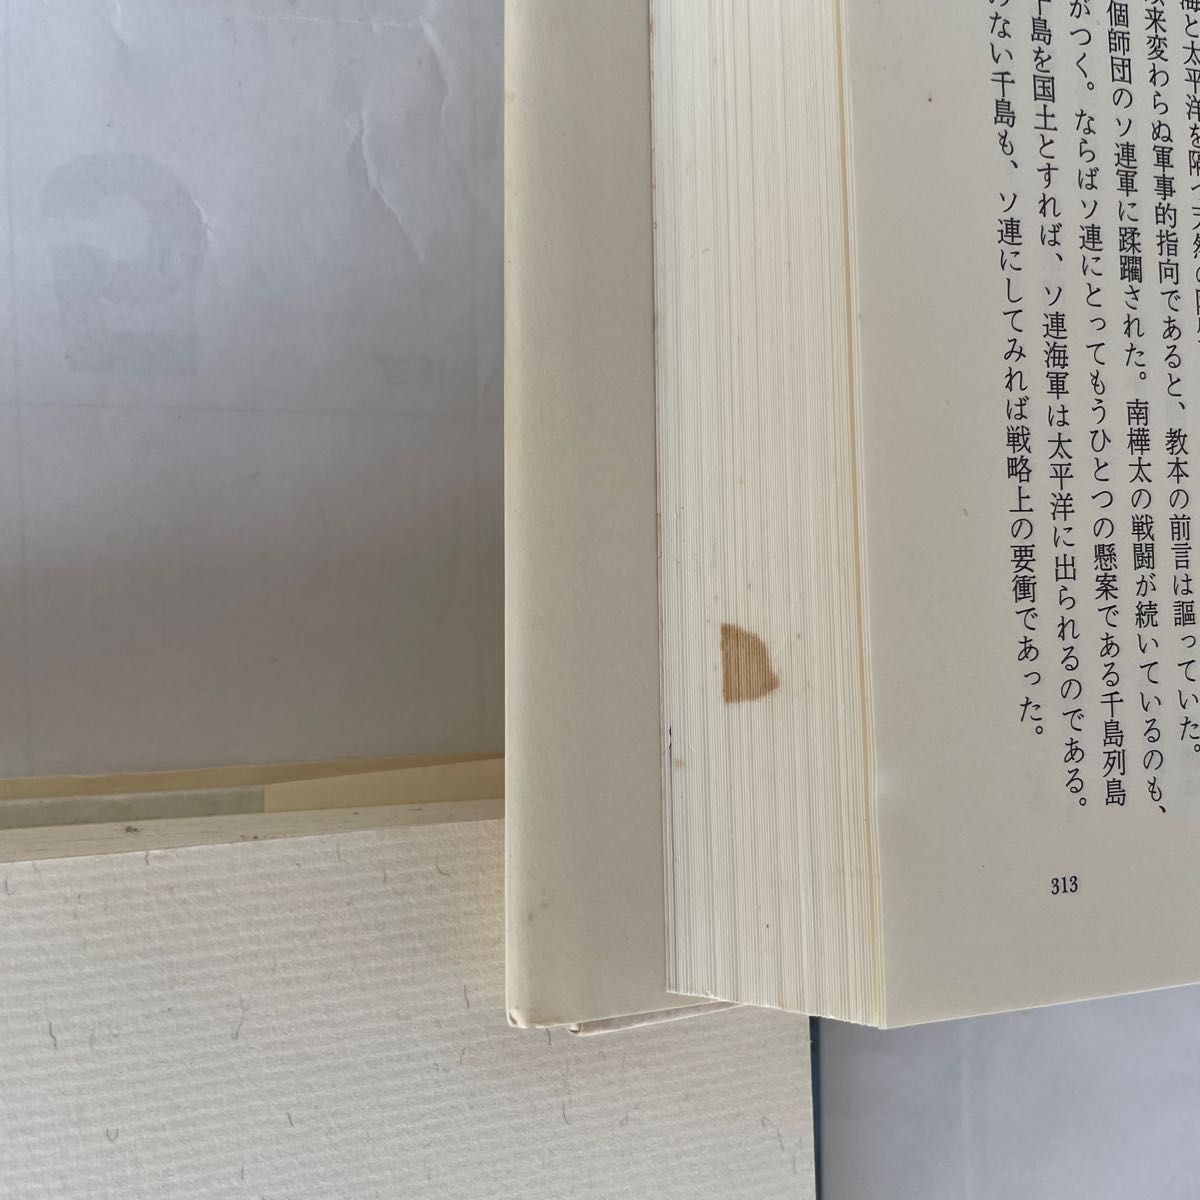 浅田次郎さんの代表作の　終わらざる夏上下ニ冊になります。　本棚に眠っていたもので、断捨離の為出展します。一部シミ等があります。